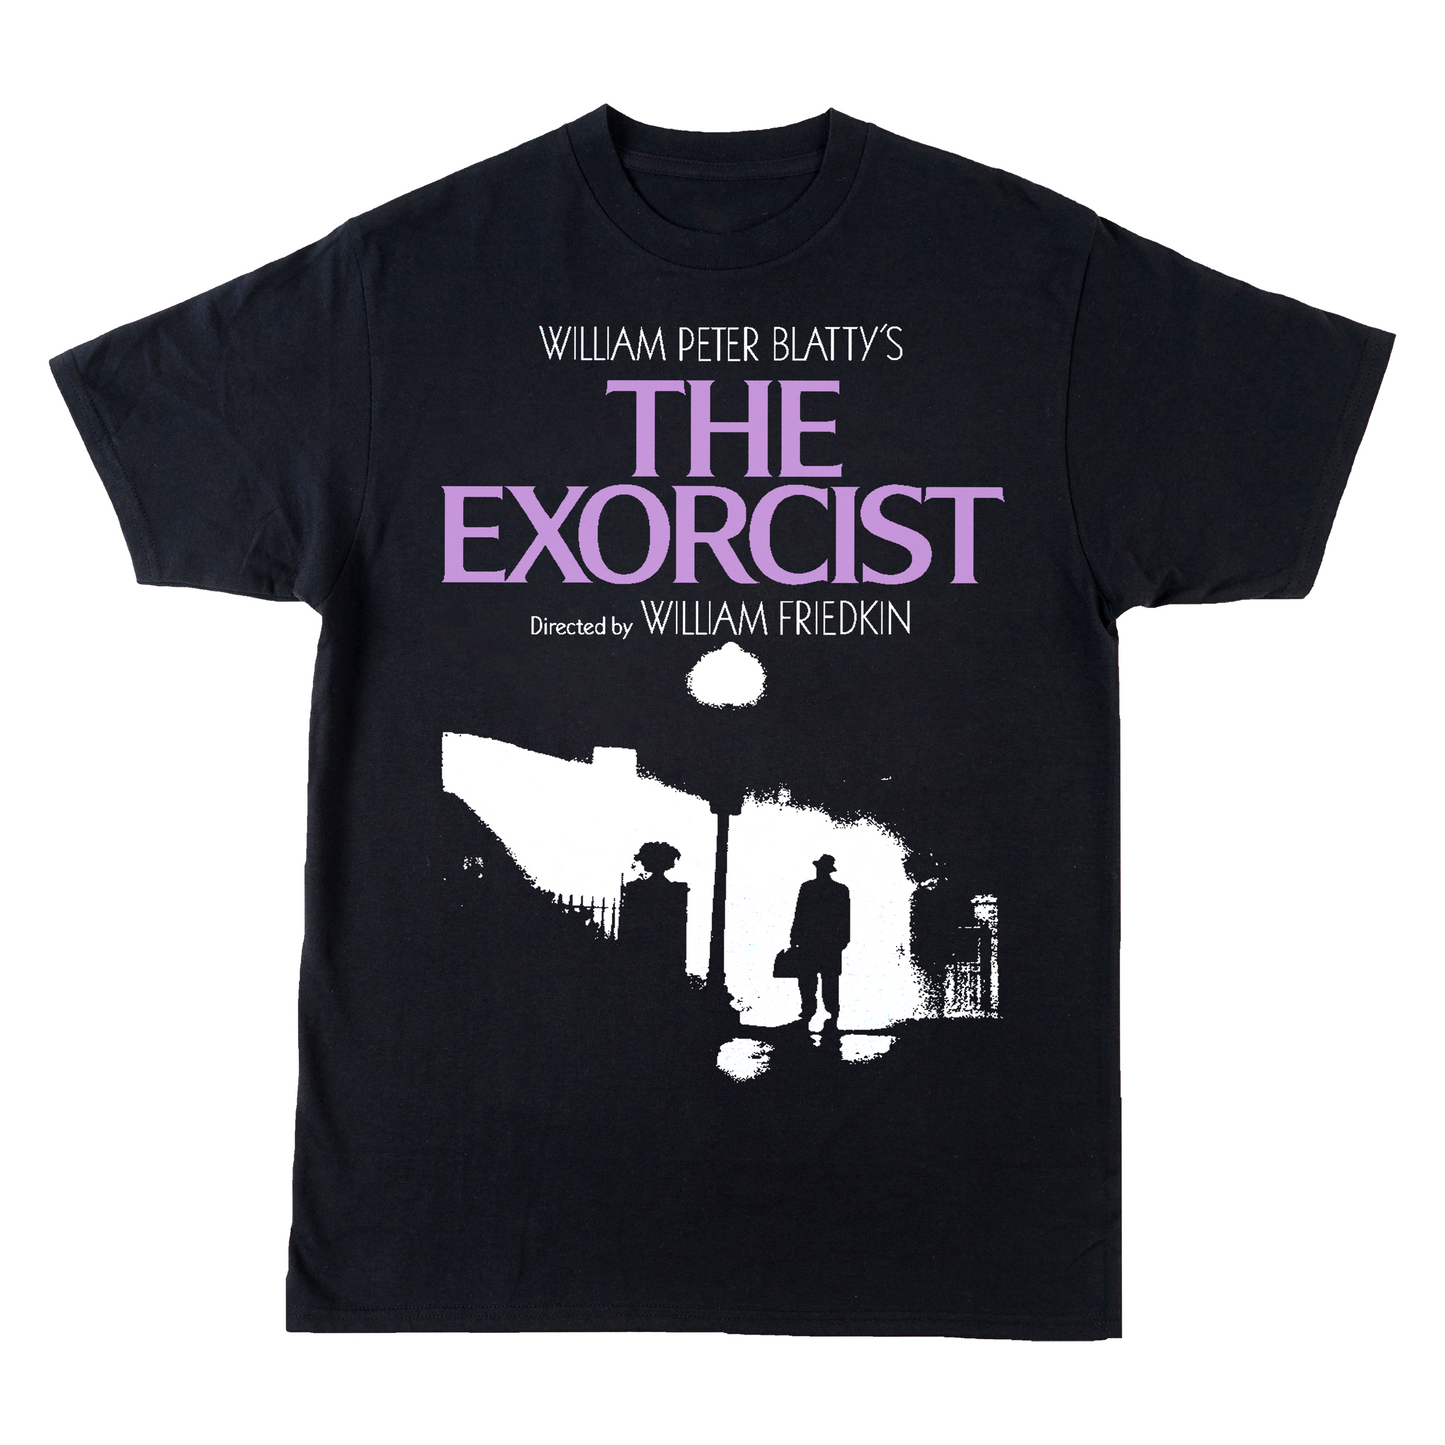 The Exorcist Shirt